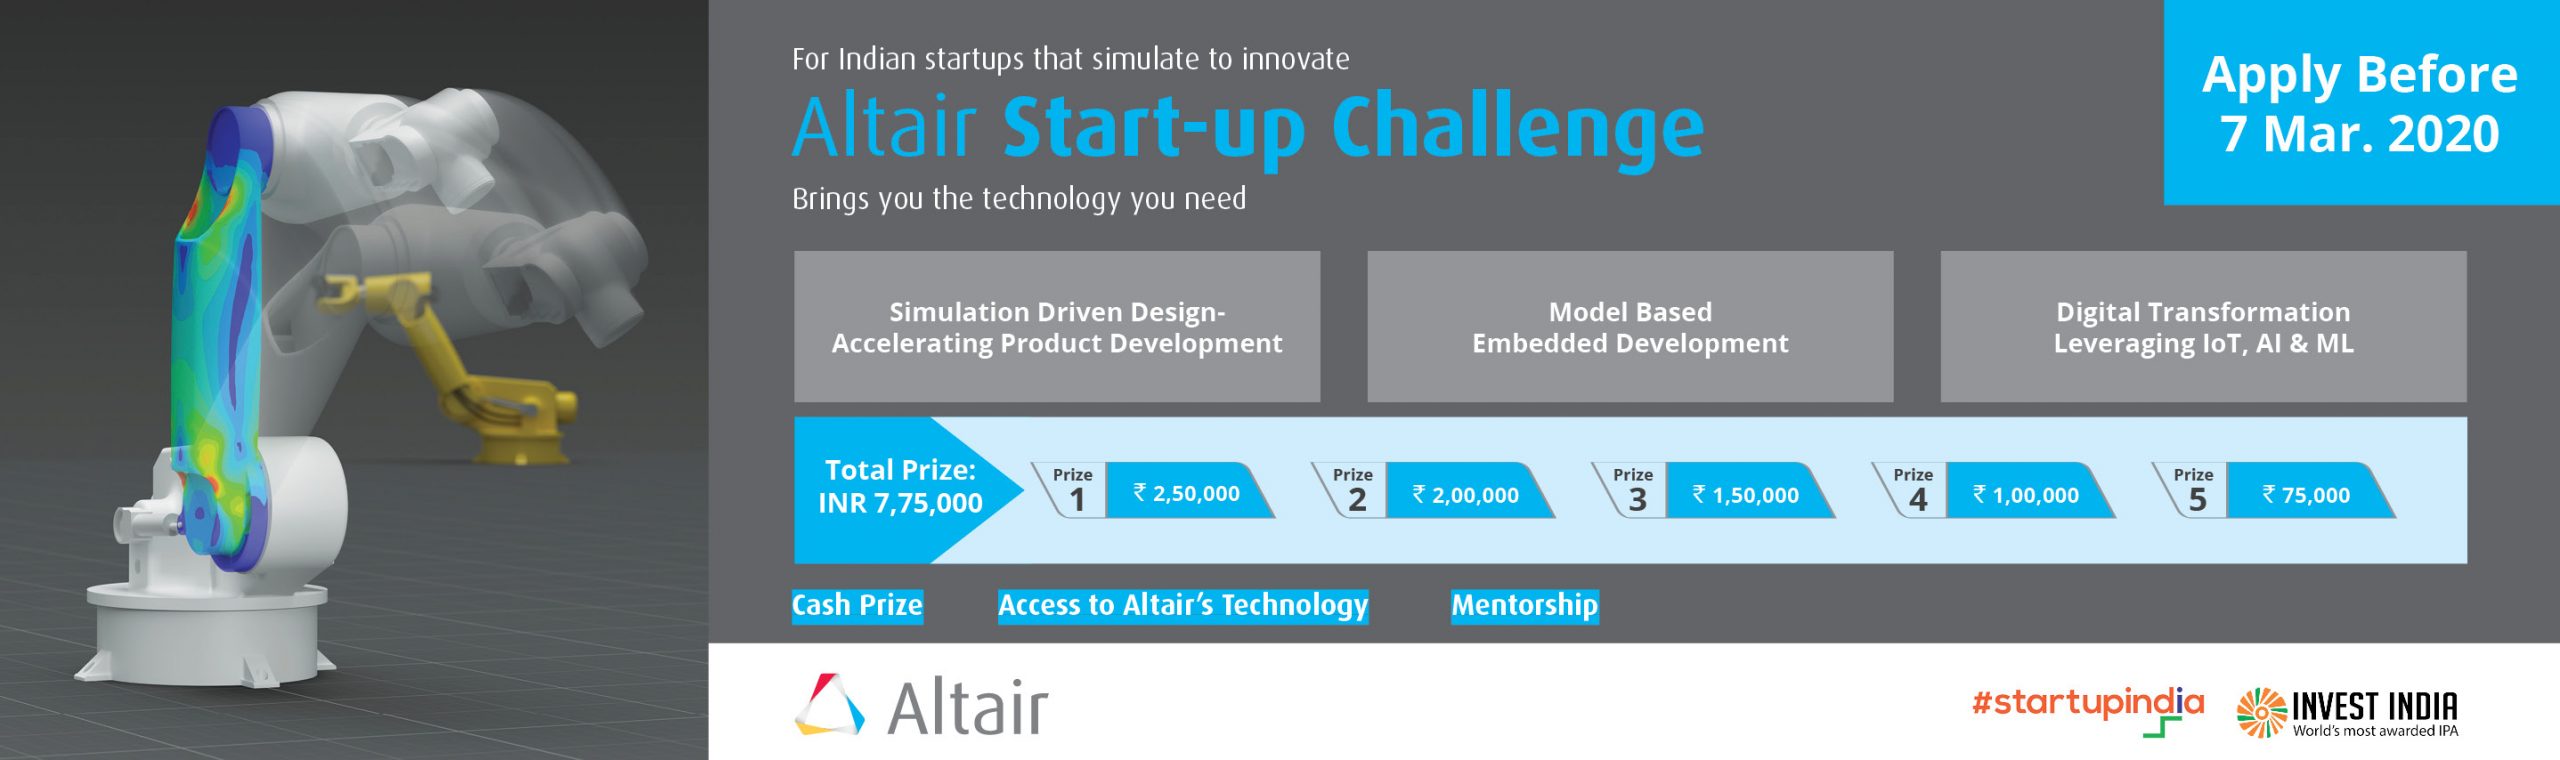 Altair Start-Up Challenge 2020